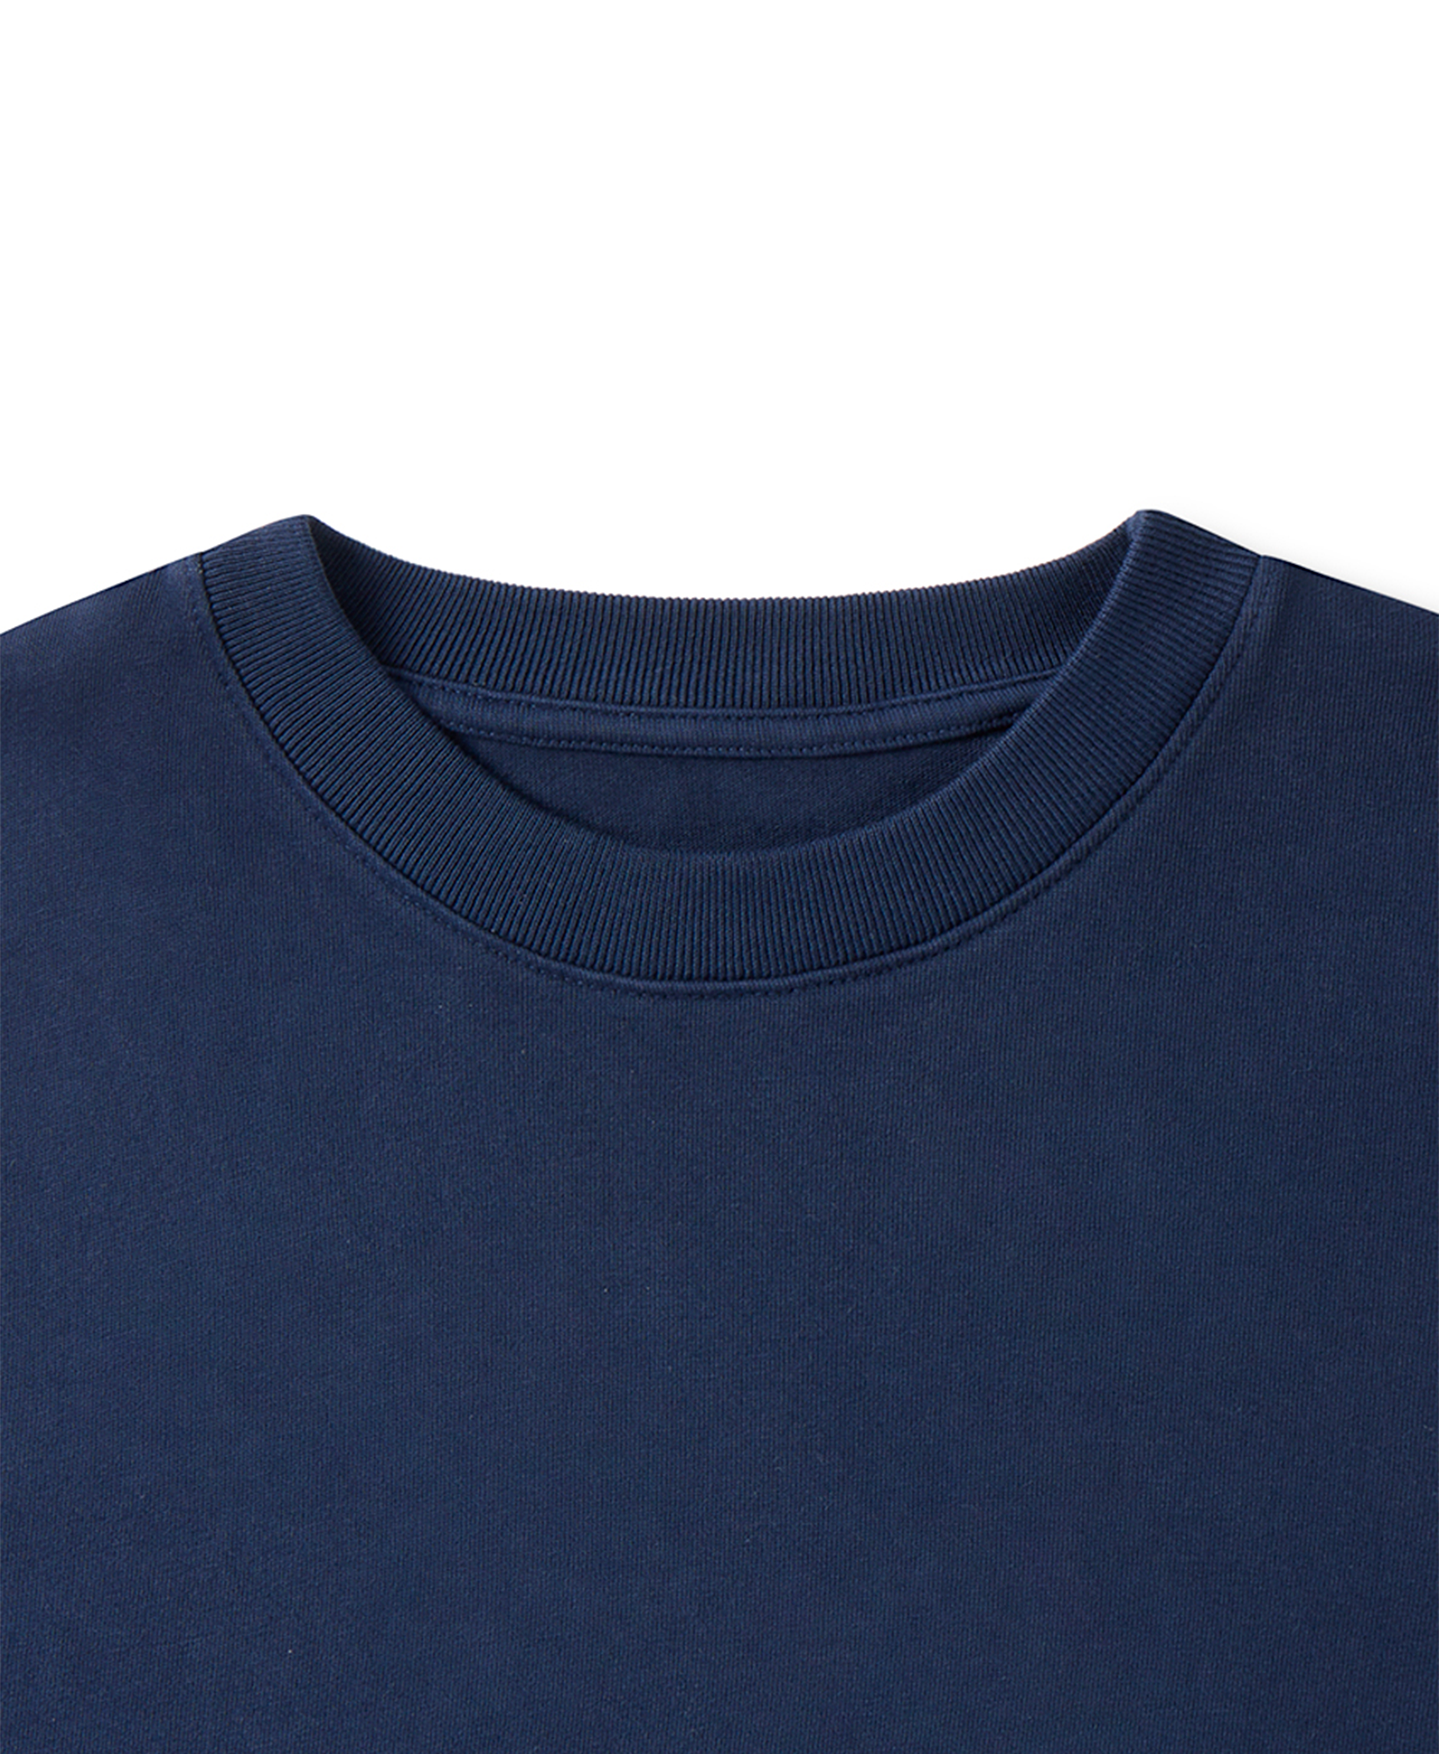 300 GSM 'Navy Blue' T-Shirt